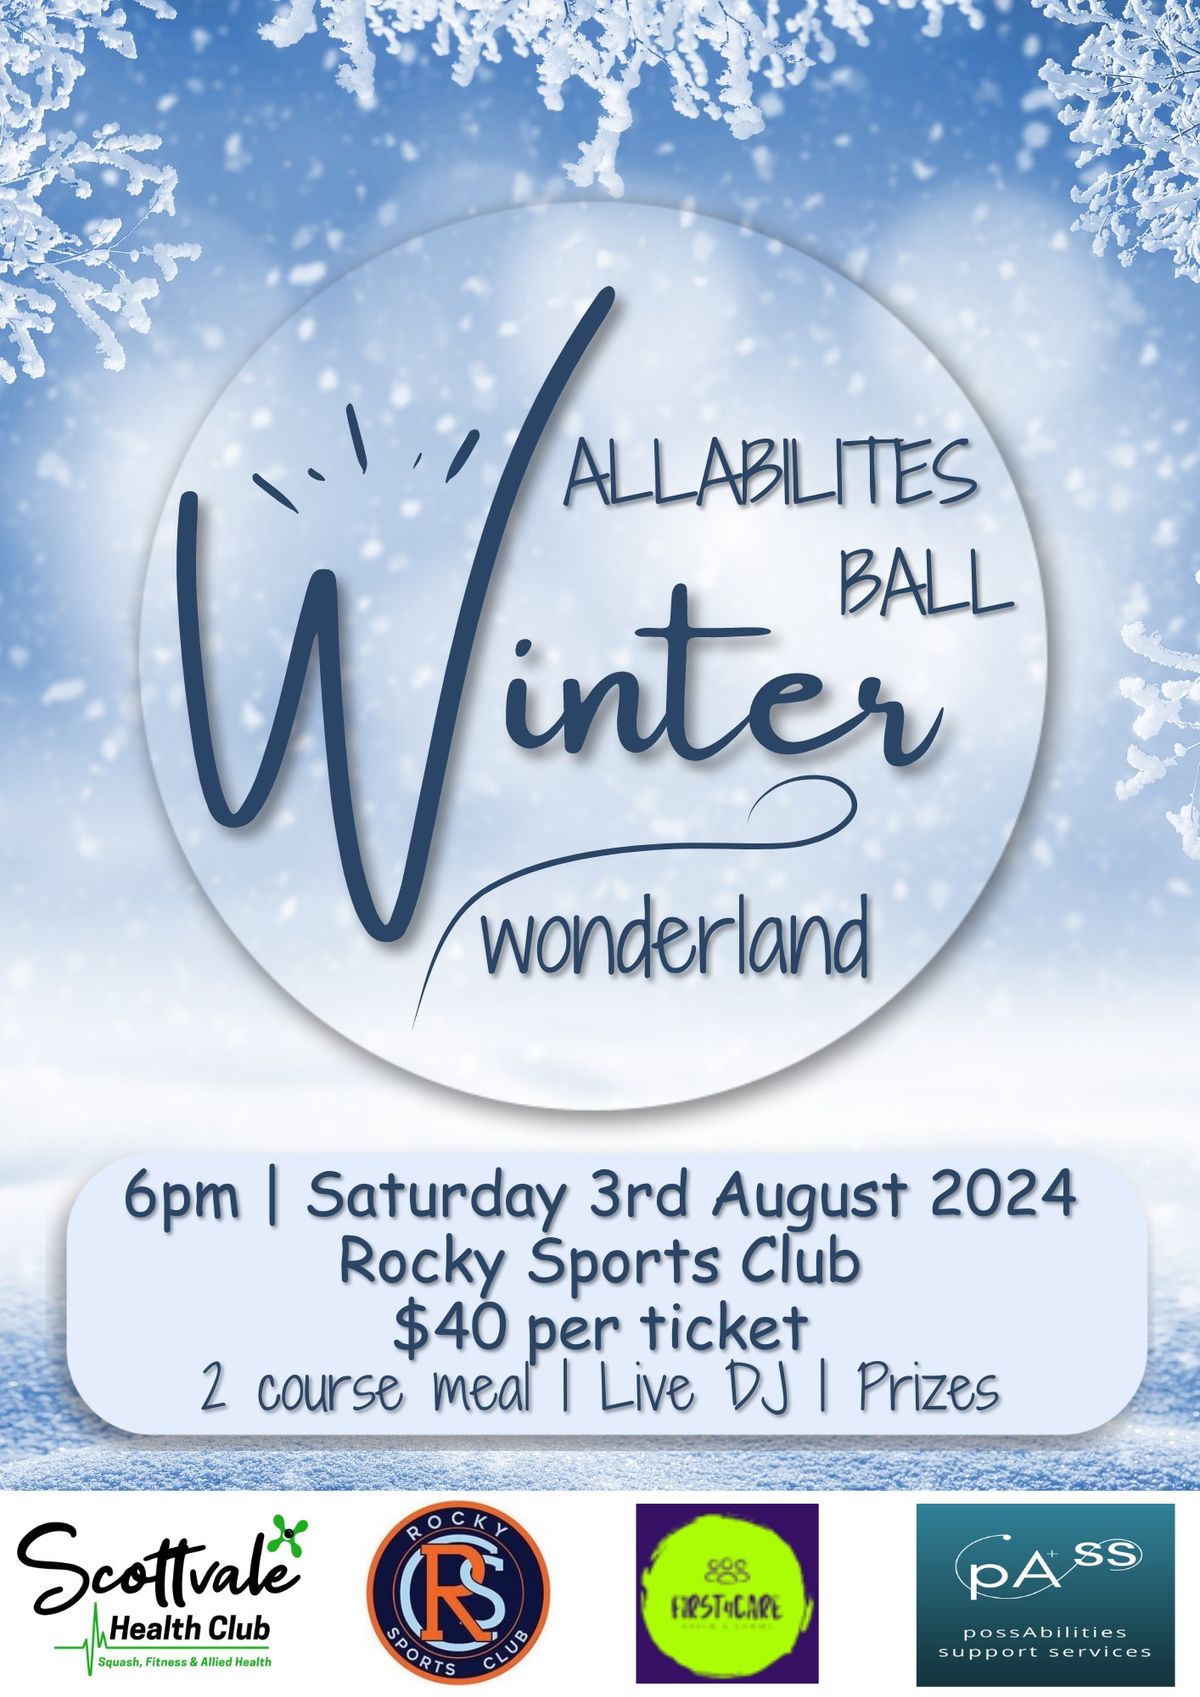 Allabilities Winter Wonderland Ball